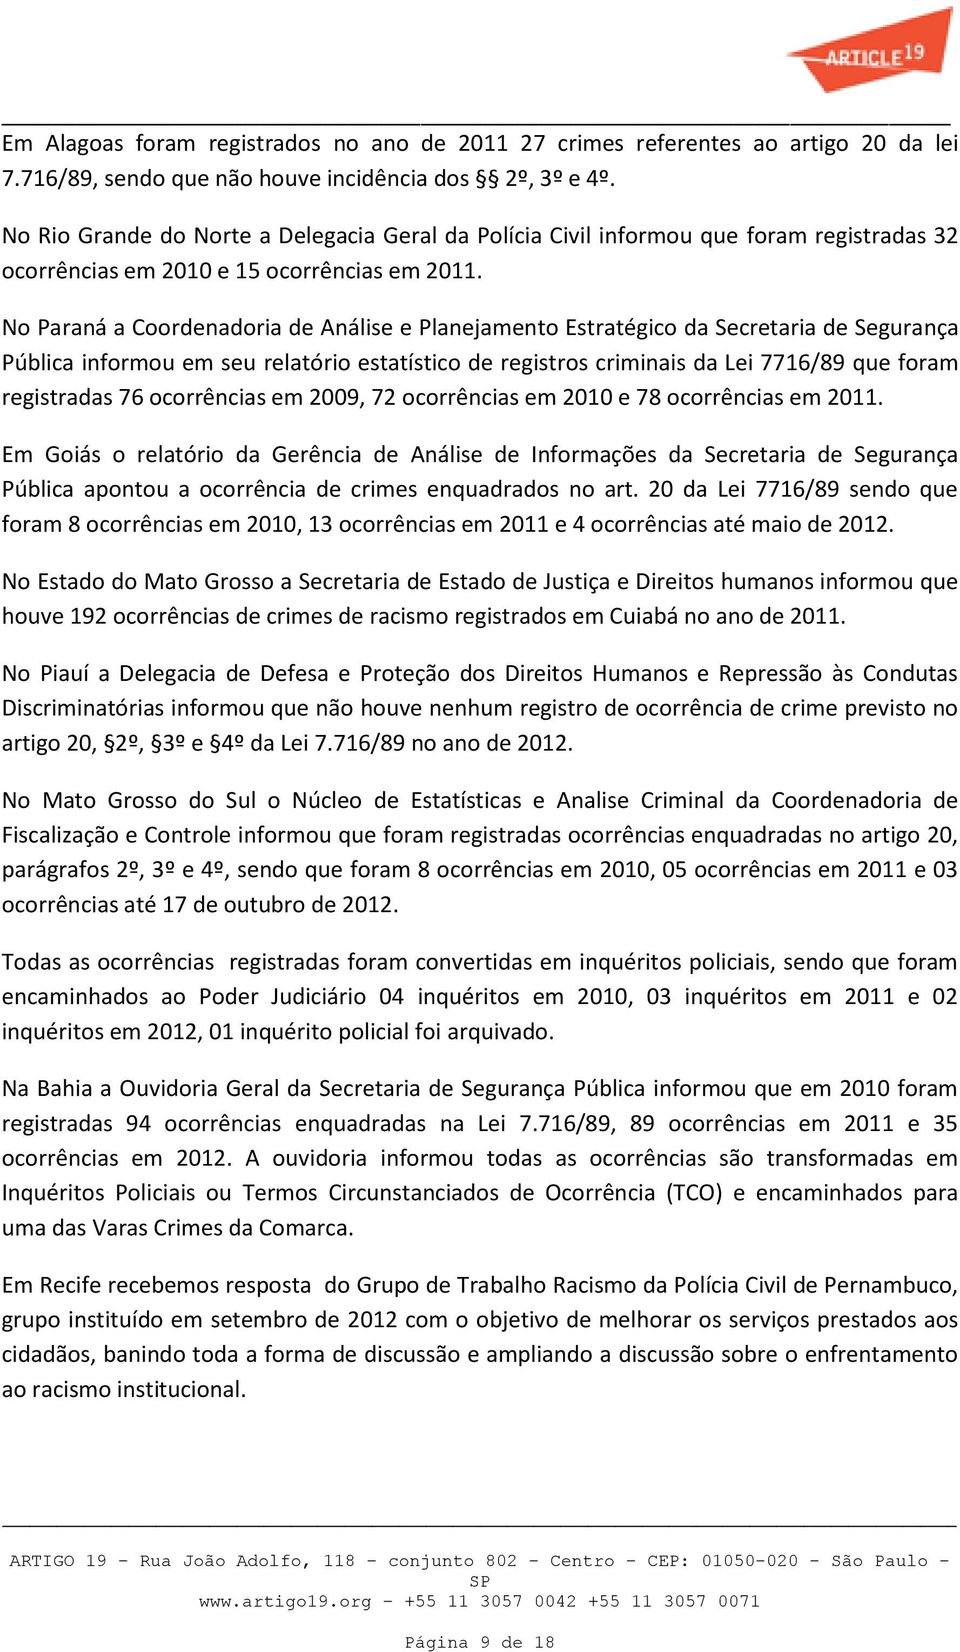 No Paraná a Coordenadoria de Análise e Planejamento Estratégico da Secretaria de Segurança Pública informou em seu relatório estatístico de registros criminais da Lei 7716/89 que foram registradas 76